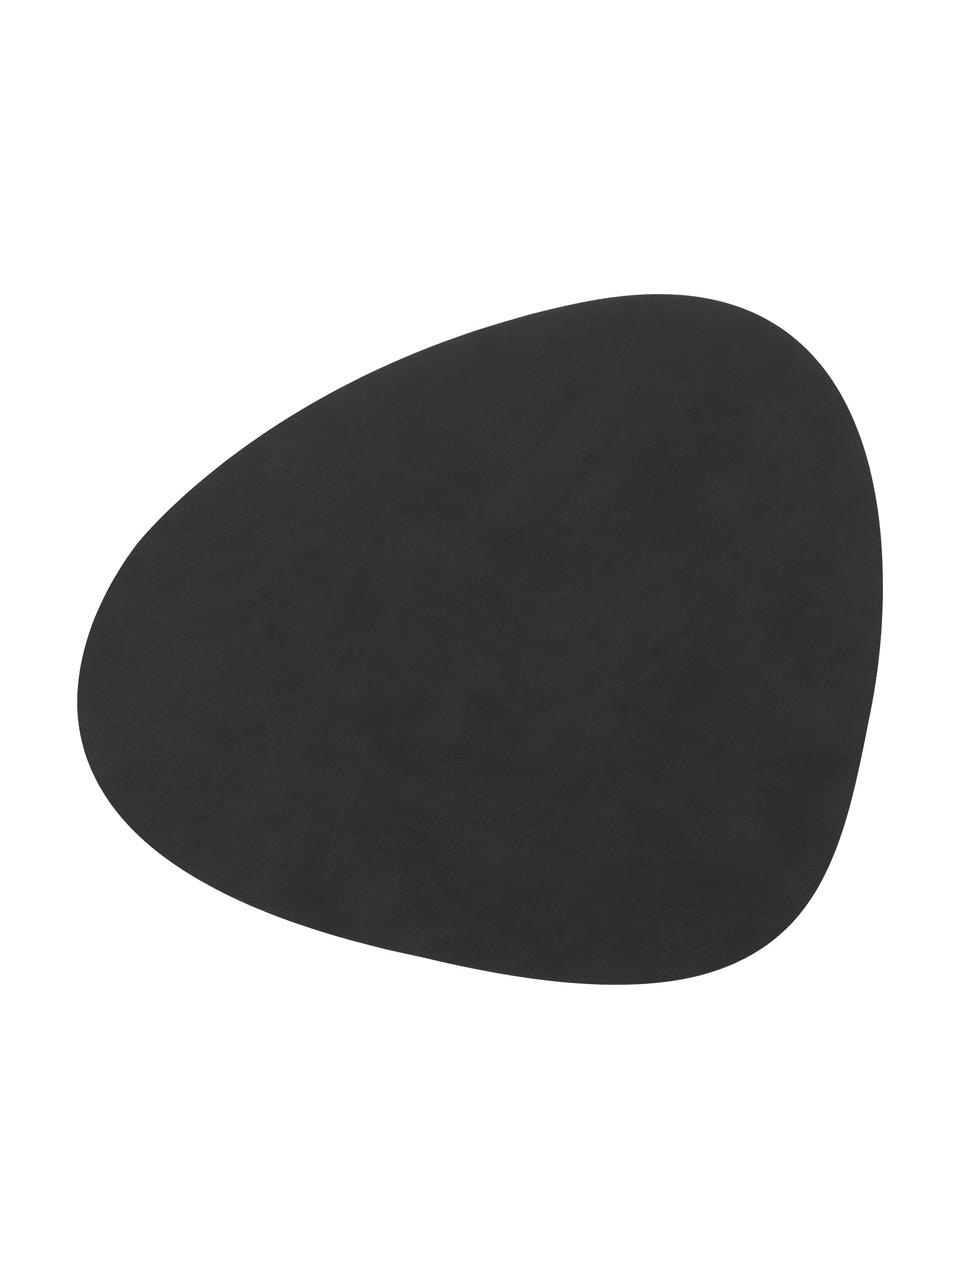 Podkładka ze skóry Curve, 4 szt., Skóra, guma, Czarny, S 44 x D 37 cm